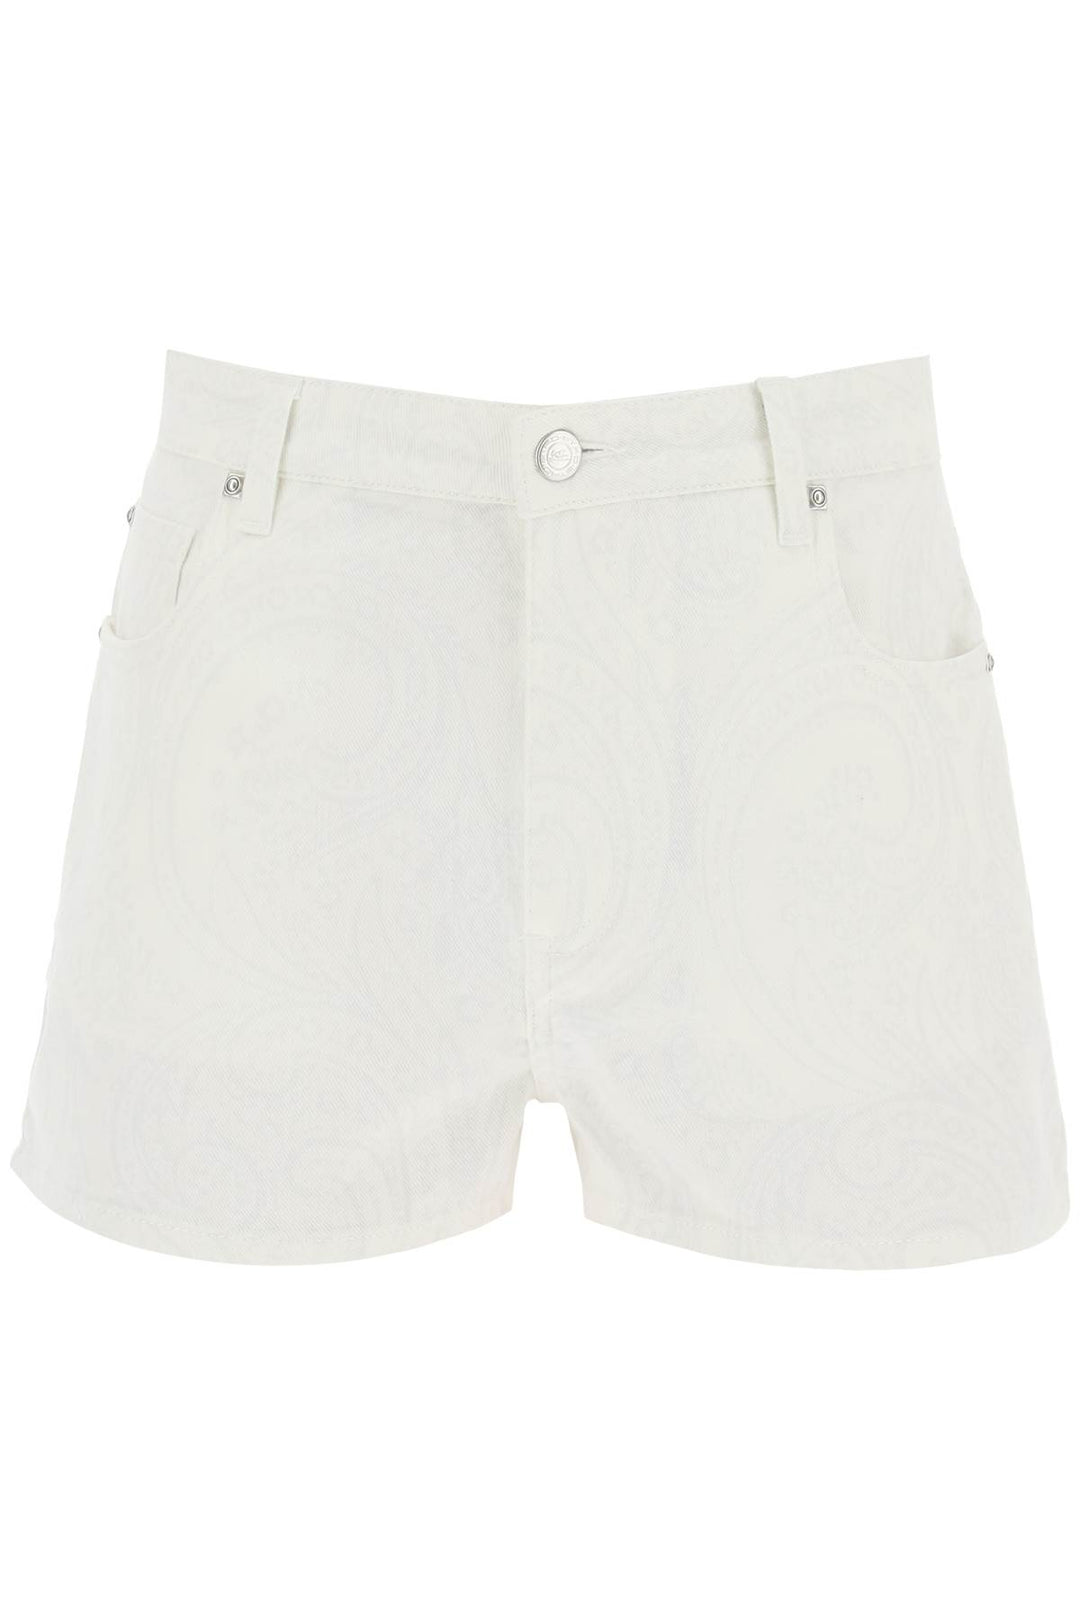 Etro Paisley Denim Shorts   Bianco